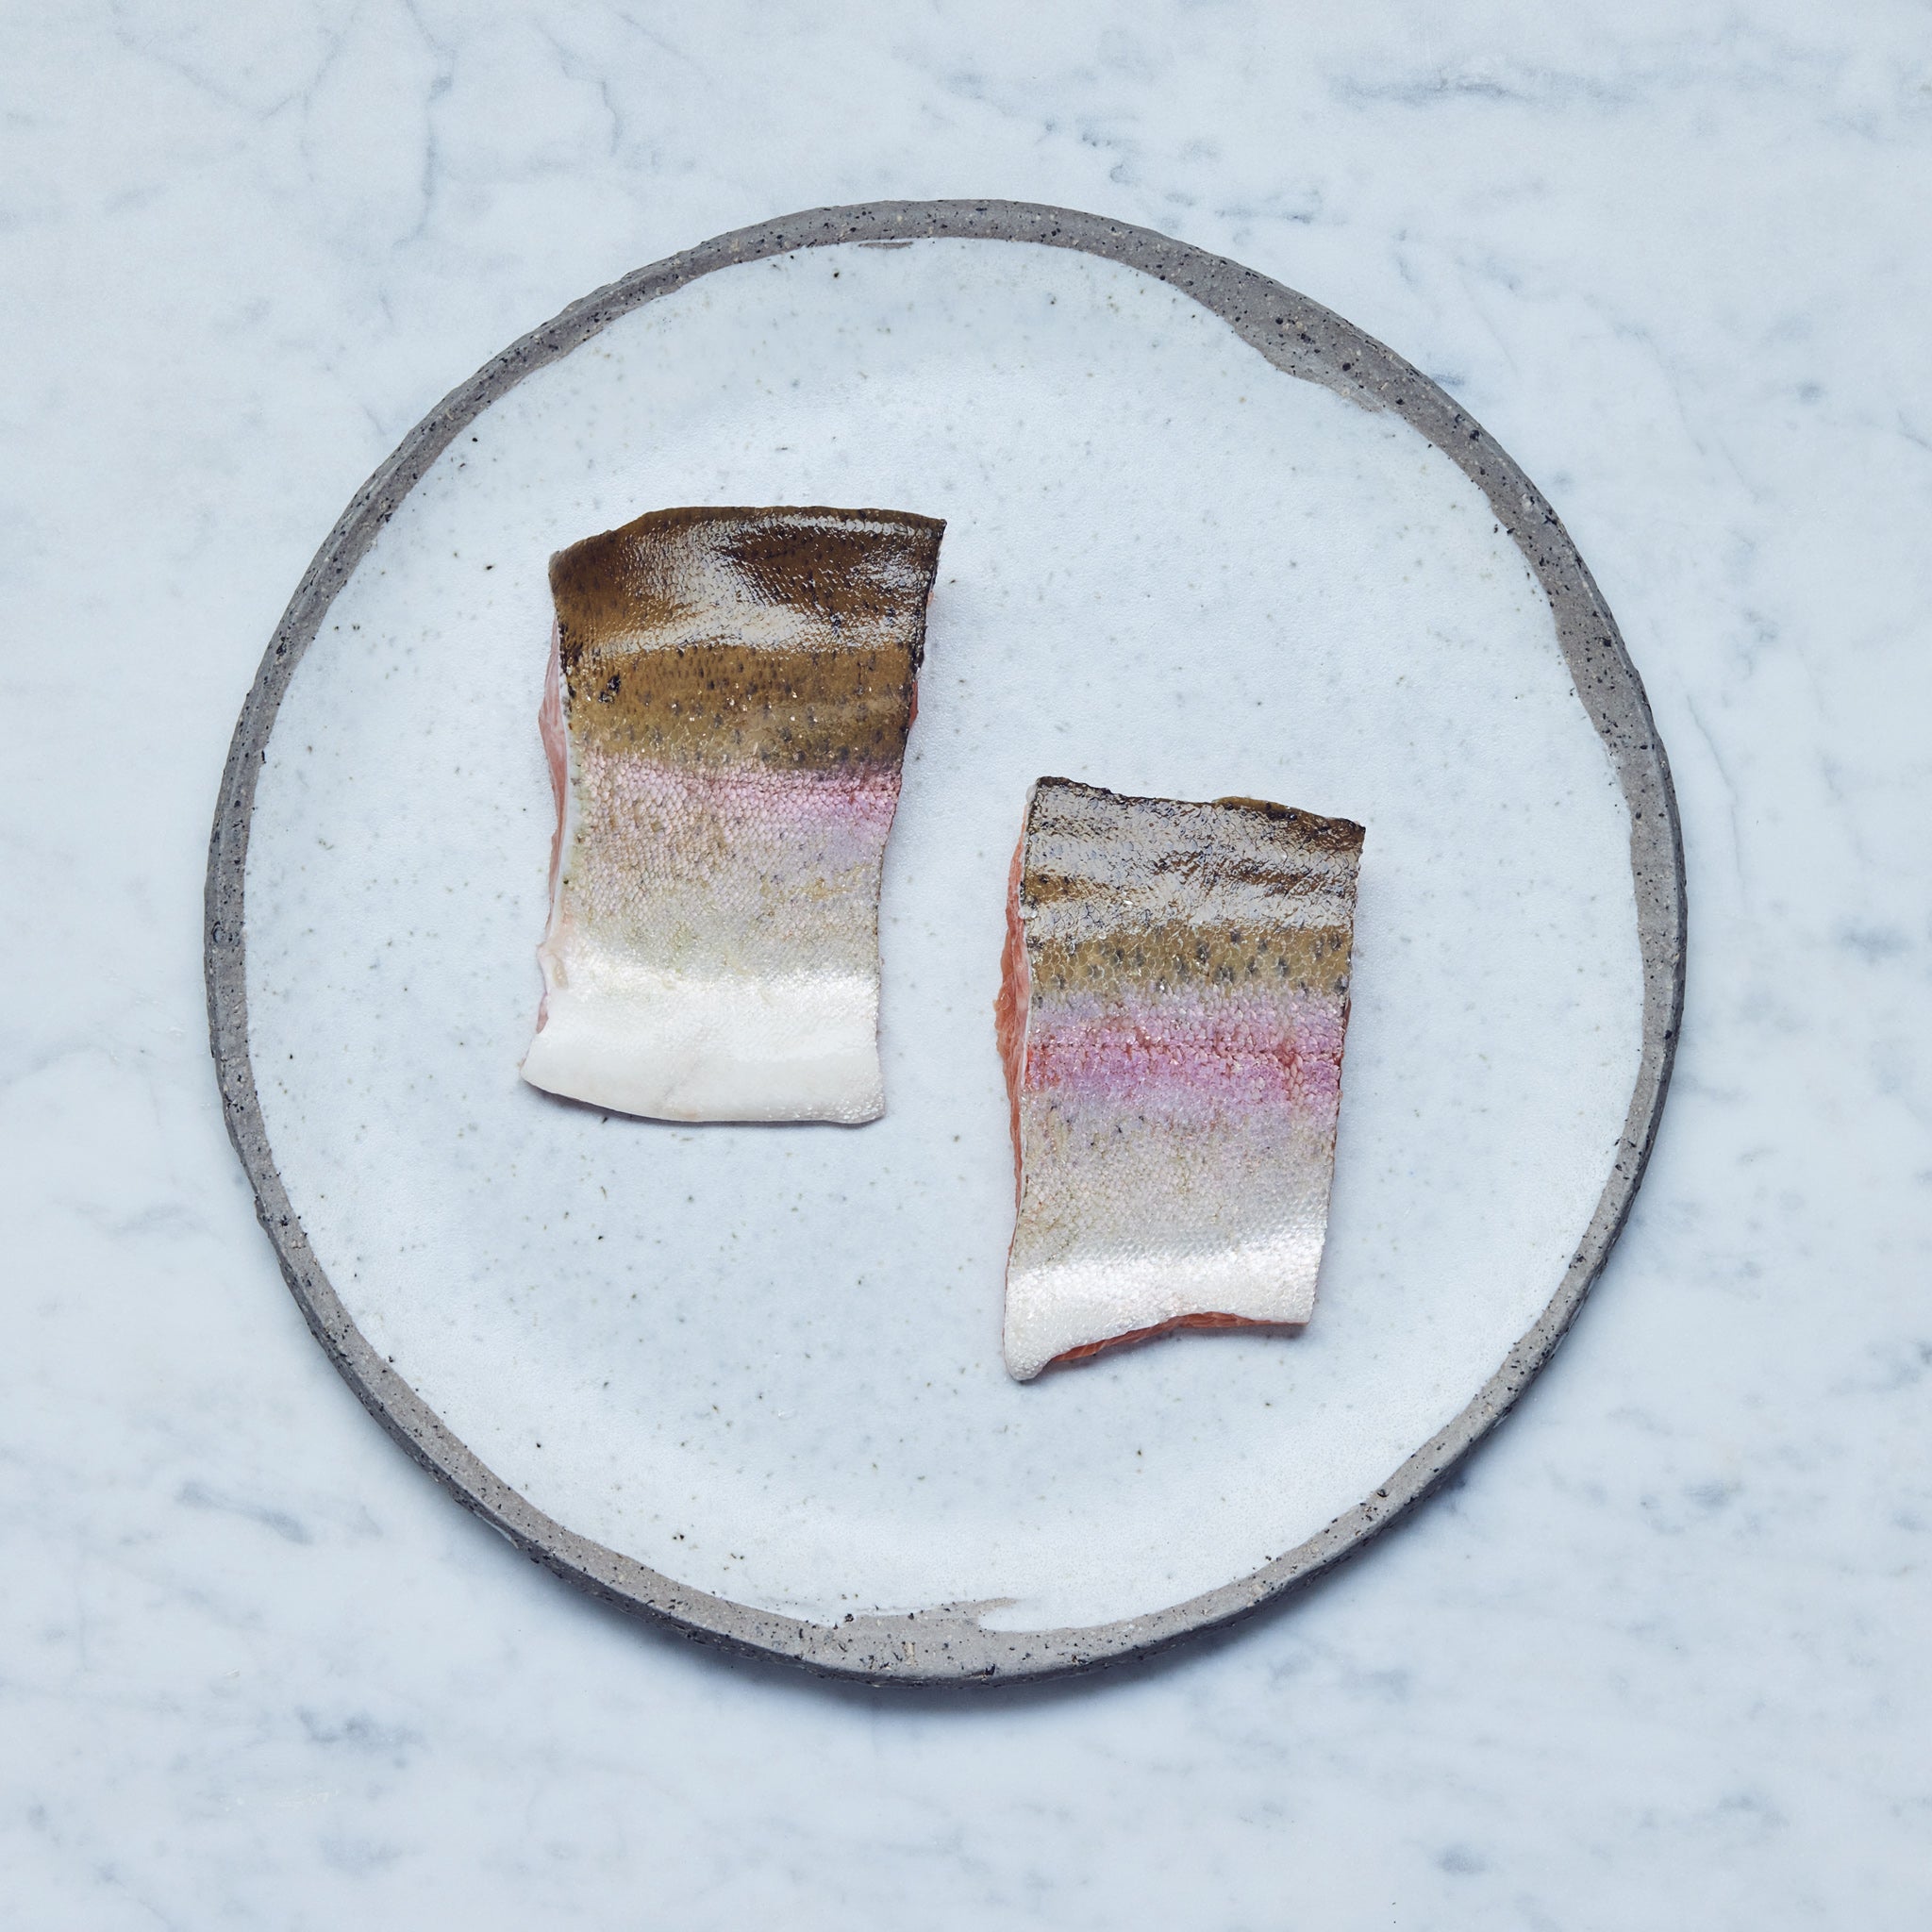 Ein runder Teller mit Bio-Lachsforellen-Filet in zwei Stücke geschnitten auf einer Marmoroberfläche.